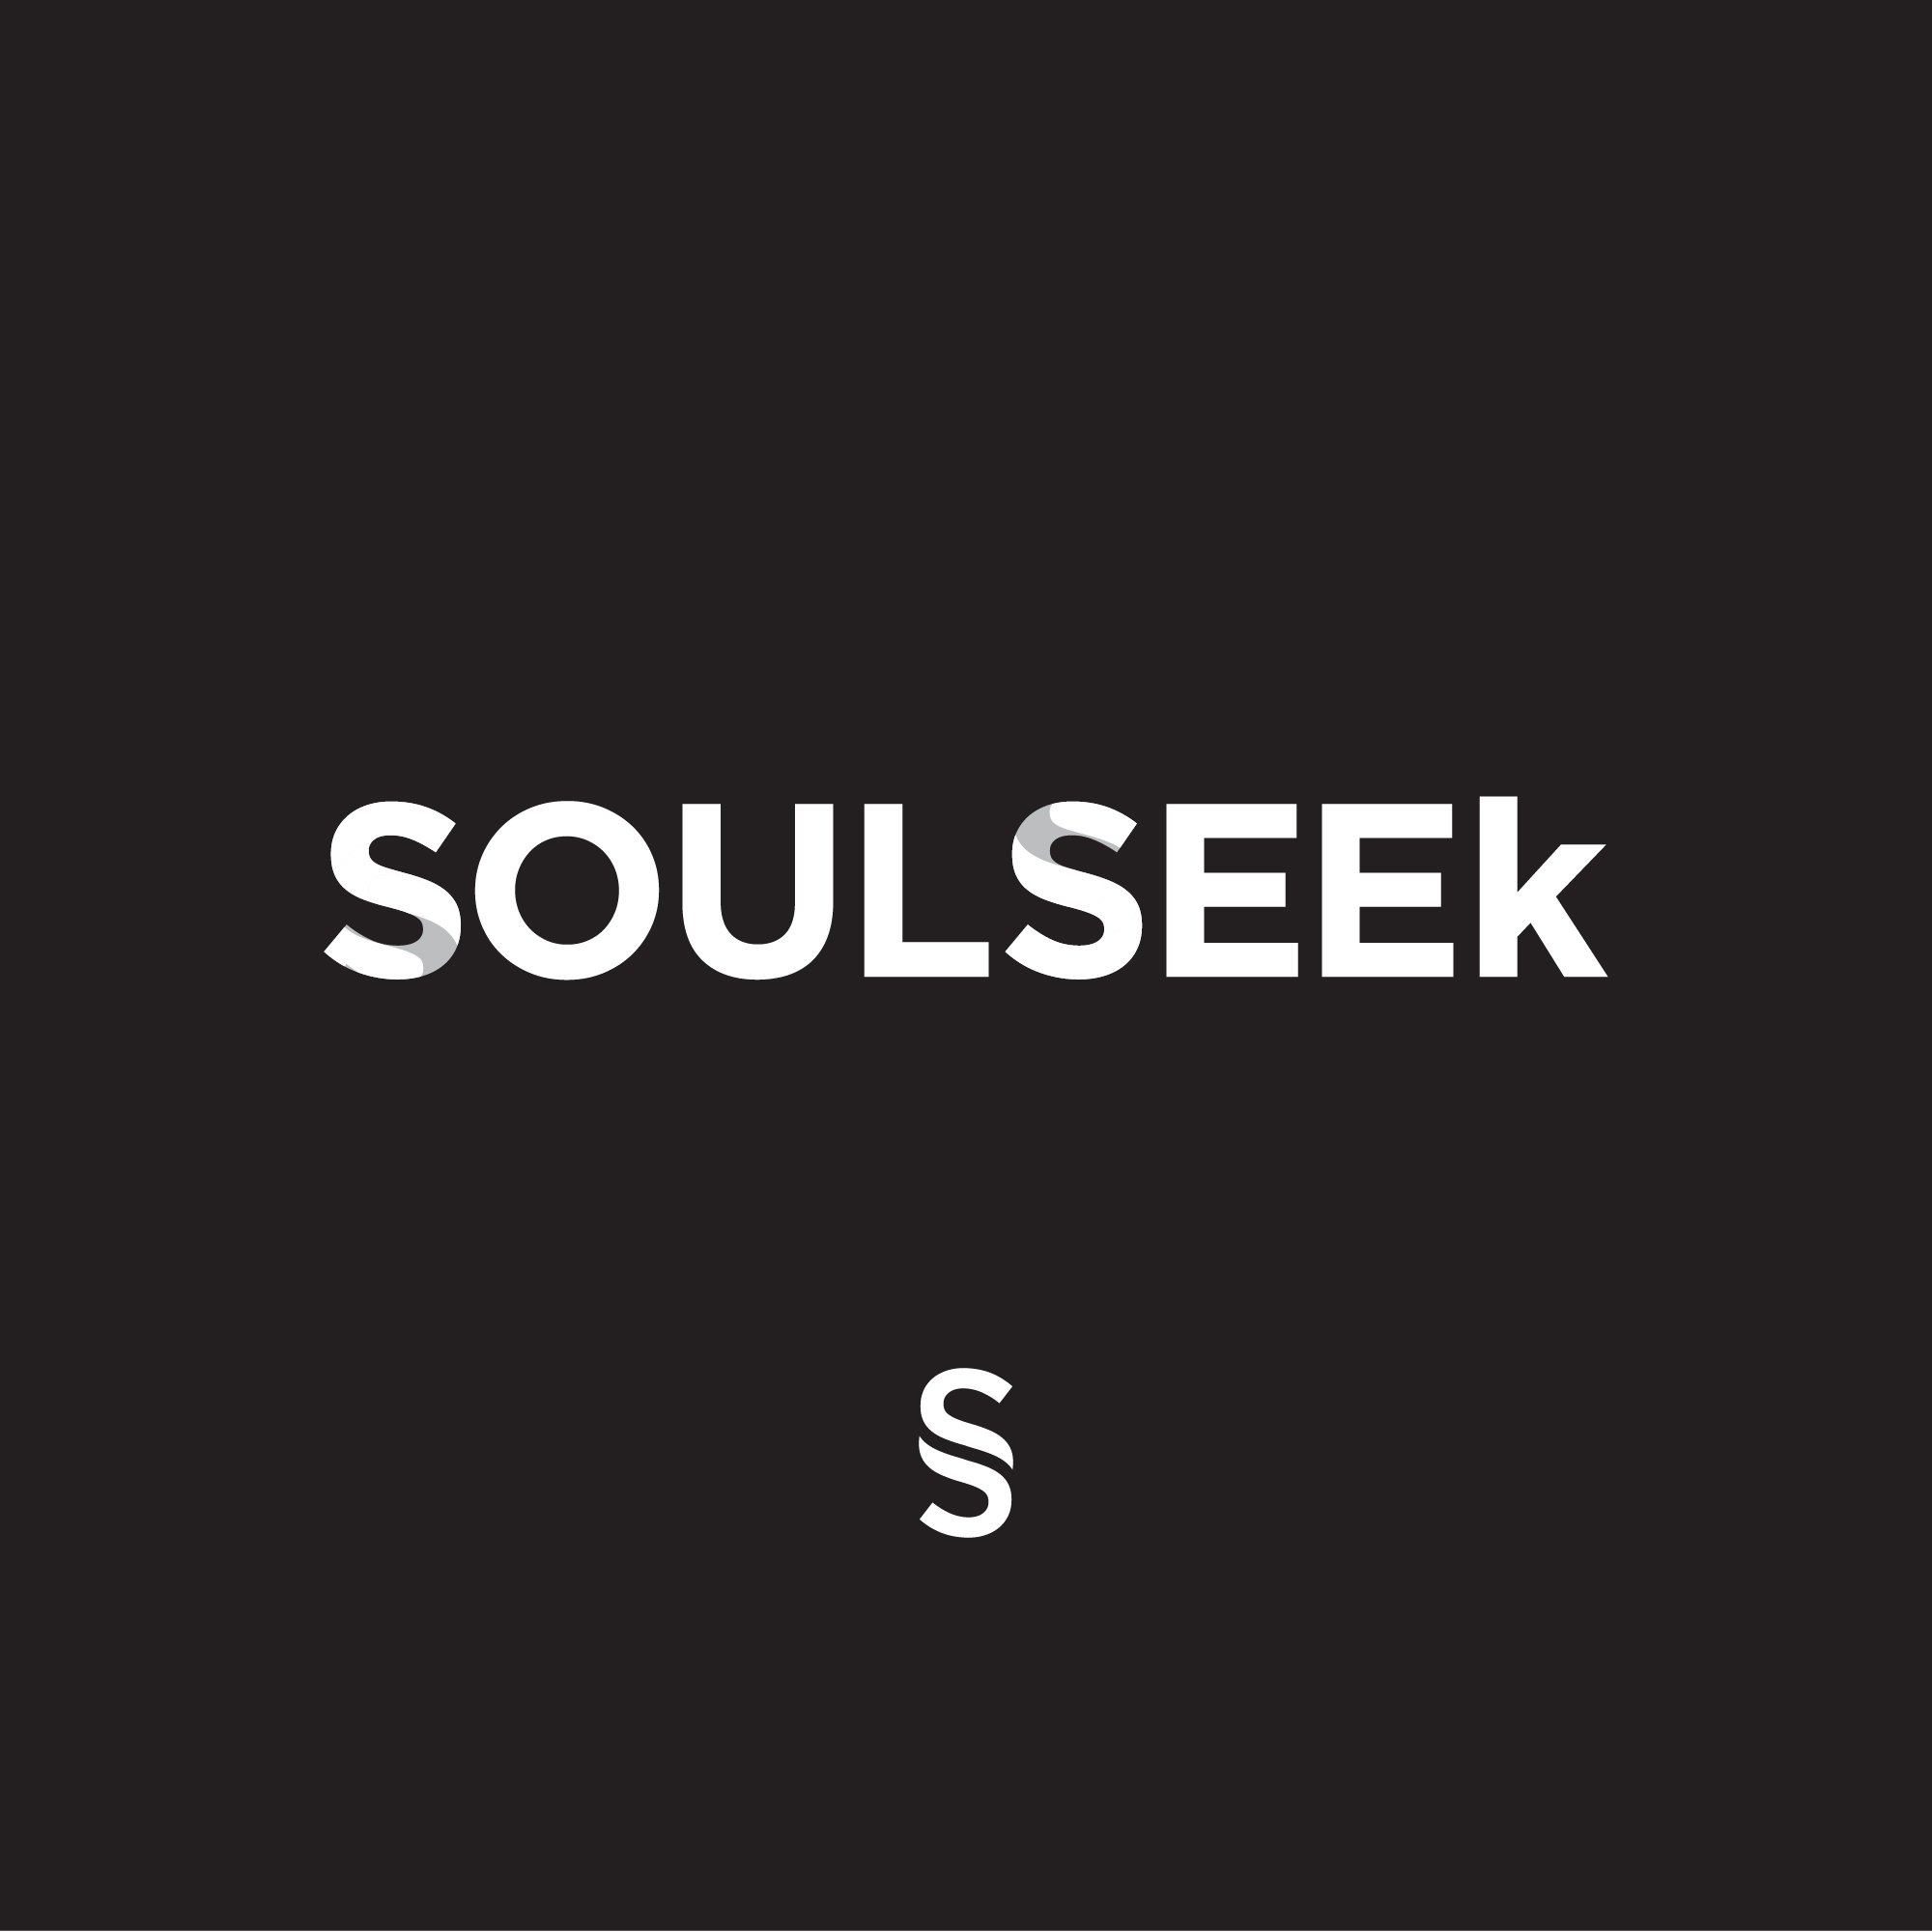 Soulseek_logo_finalTreatment.jpg